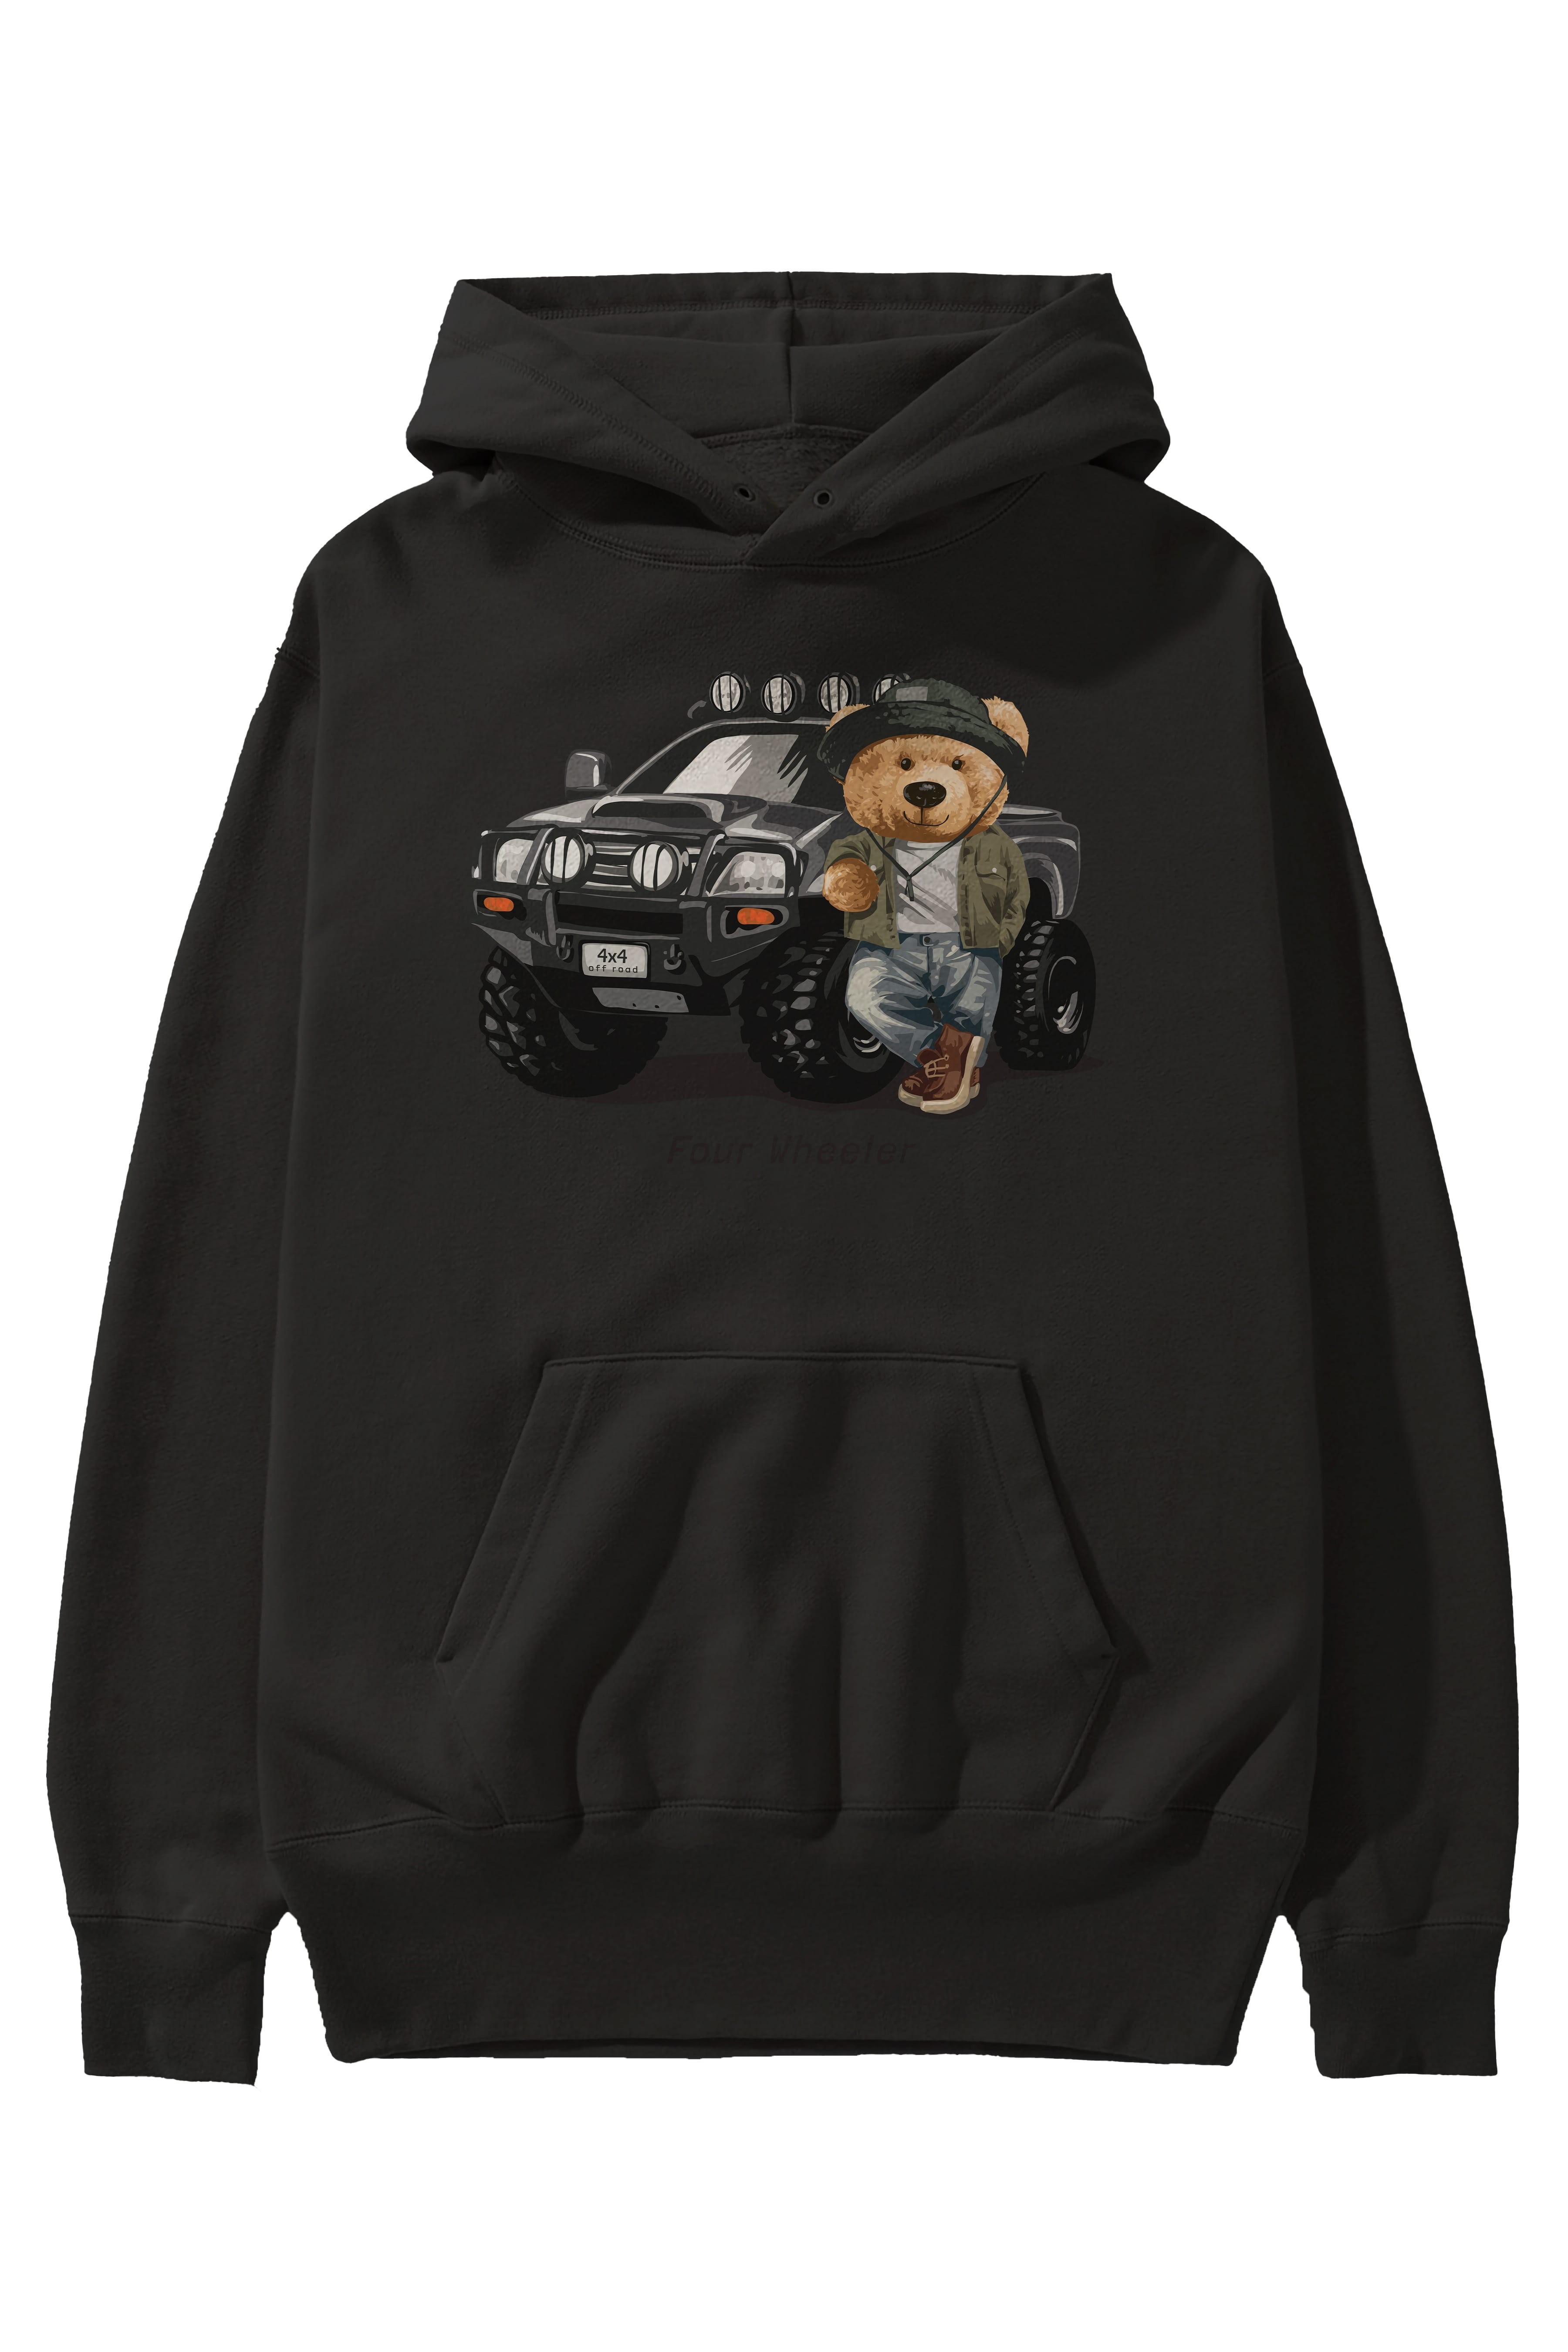 Teddy Bear Off Road Ön Baskılı Hoodie Oversize Kapüşonlu Sweatshirt Erkek Kadın Unisex